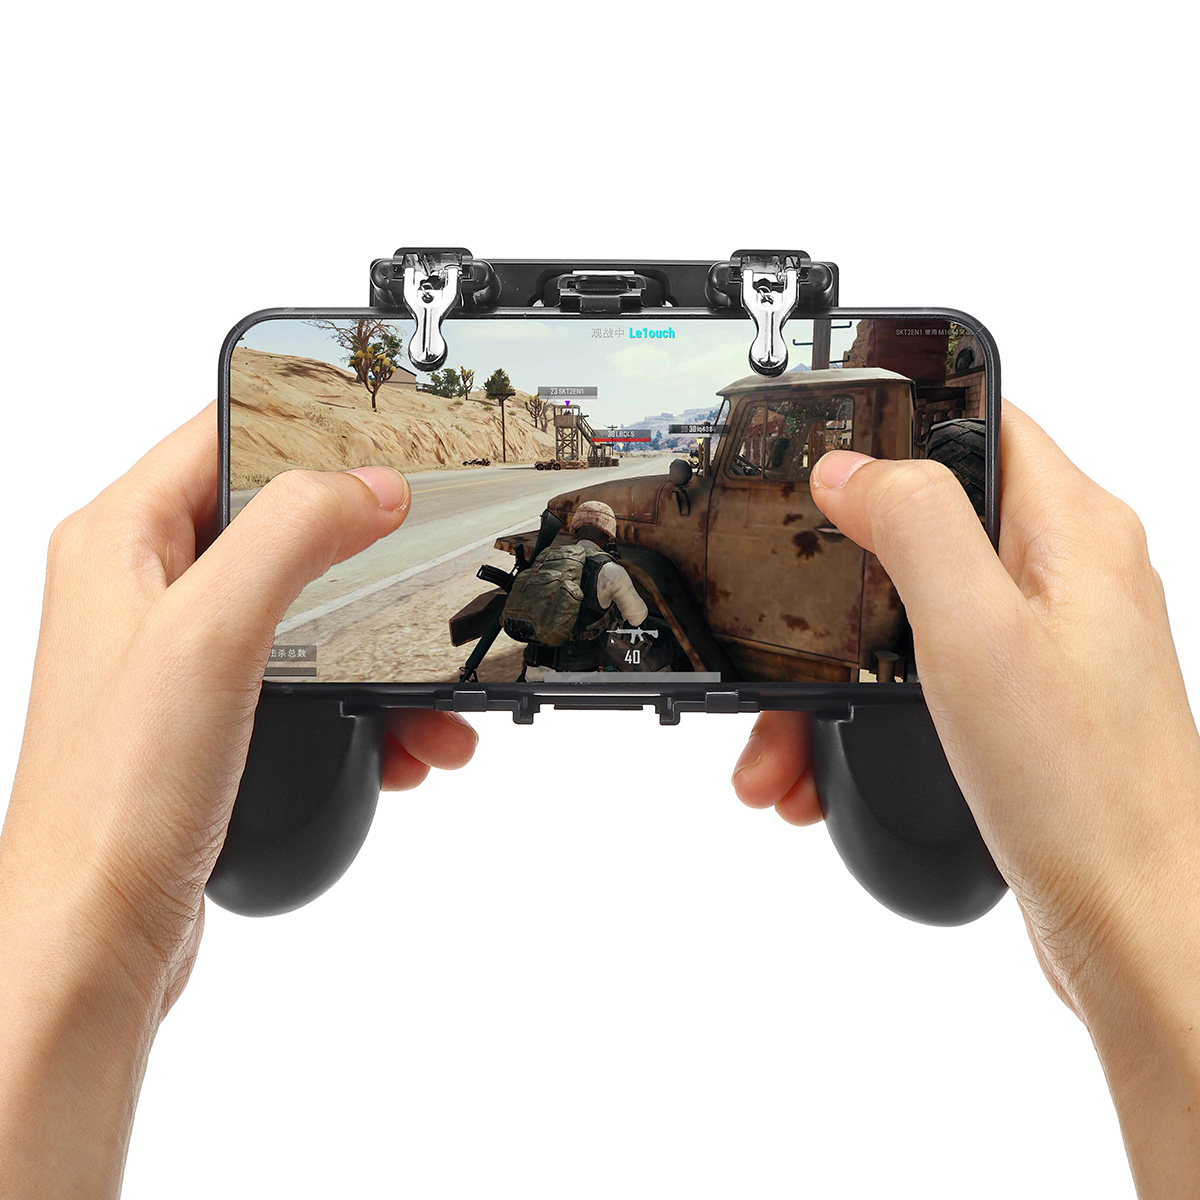 

H1 Геймпад Игровой контроллер Fire Trigger Shooter Кнопка для мобильной игры PUBG для телефона